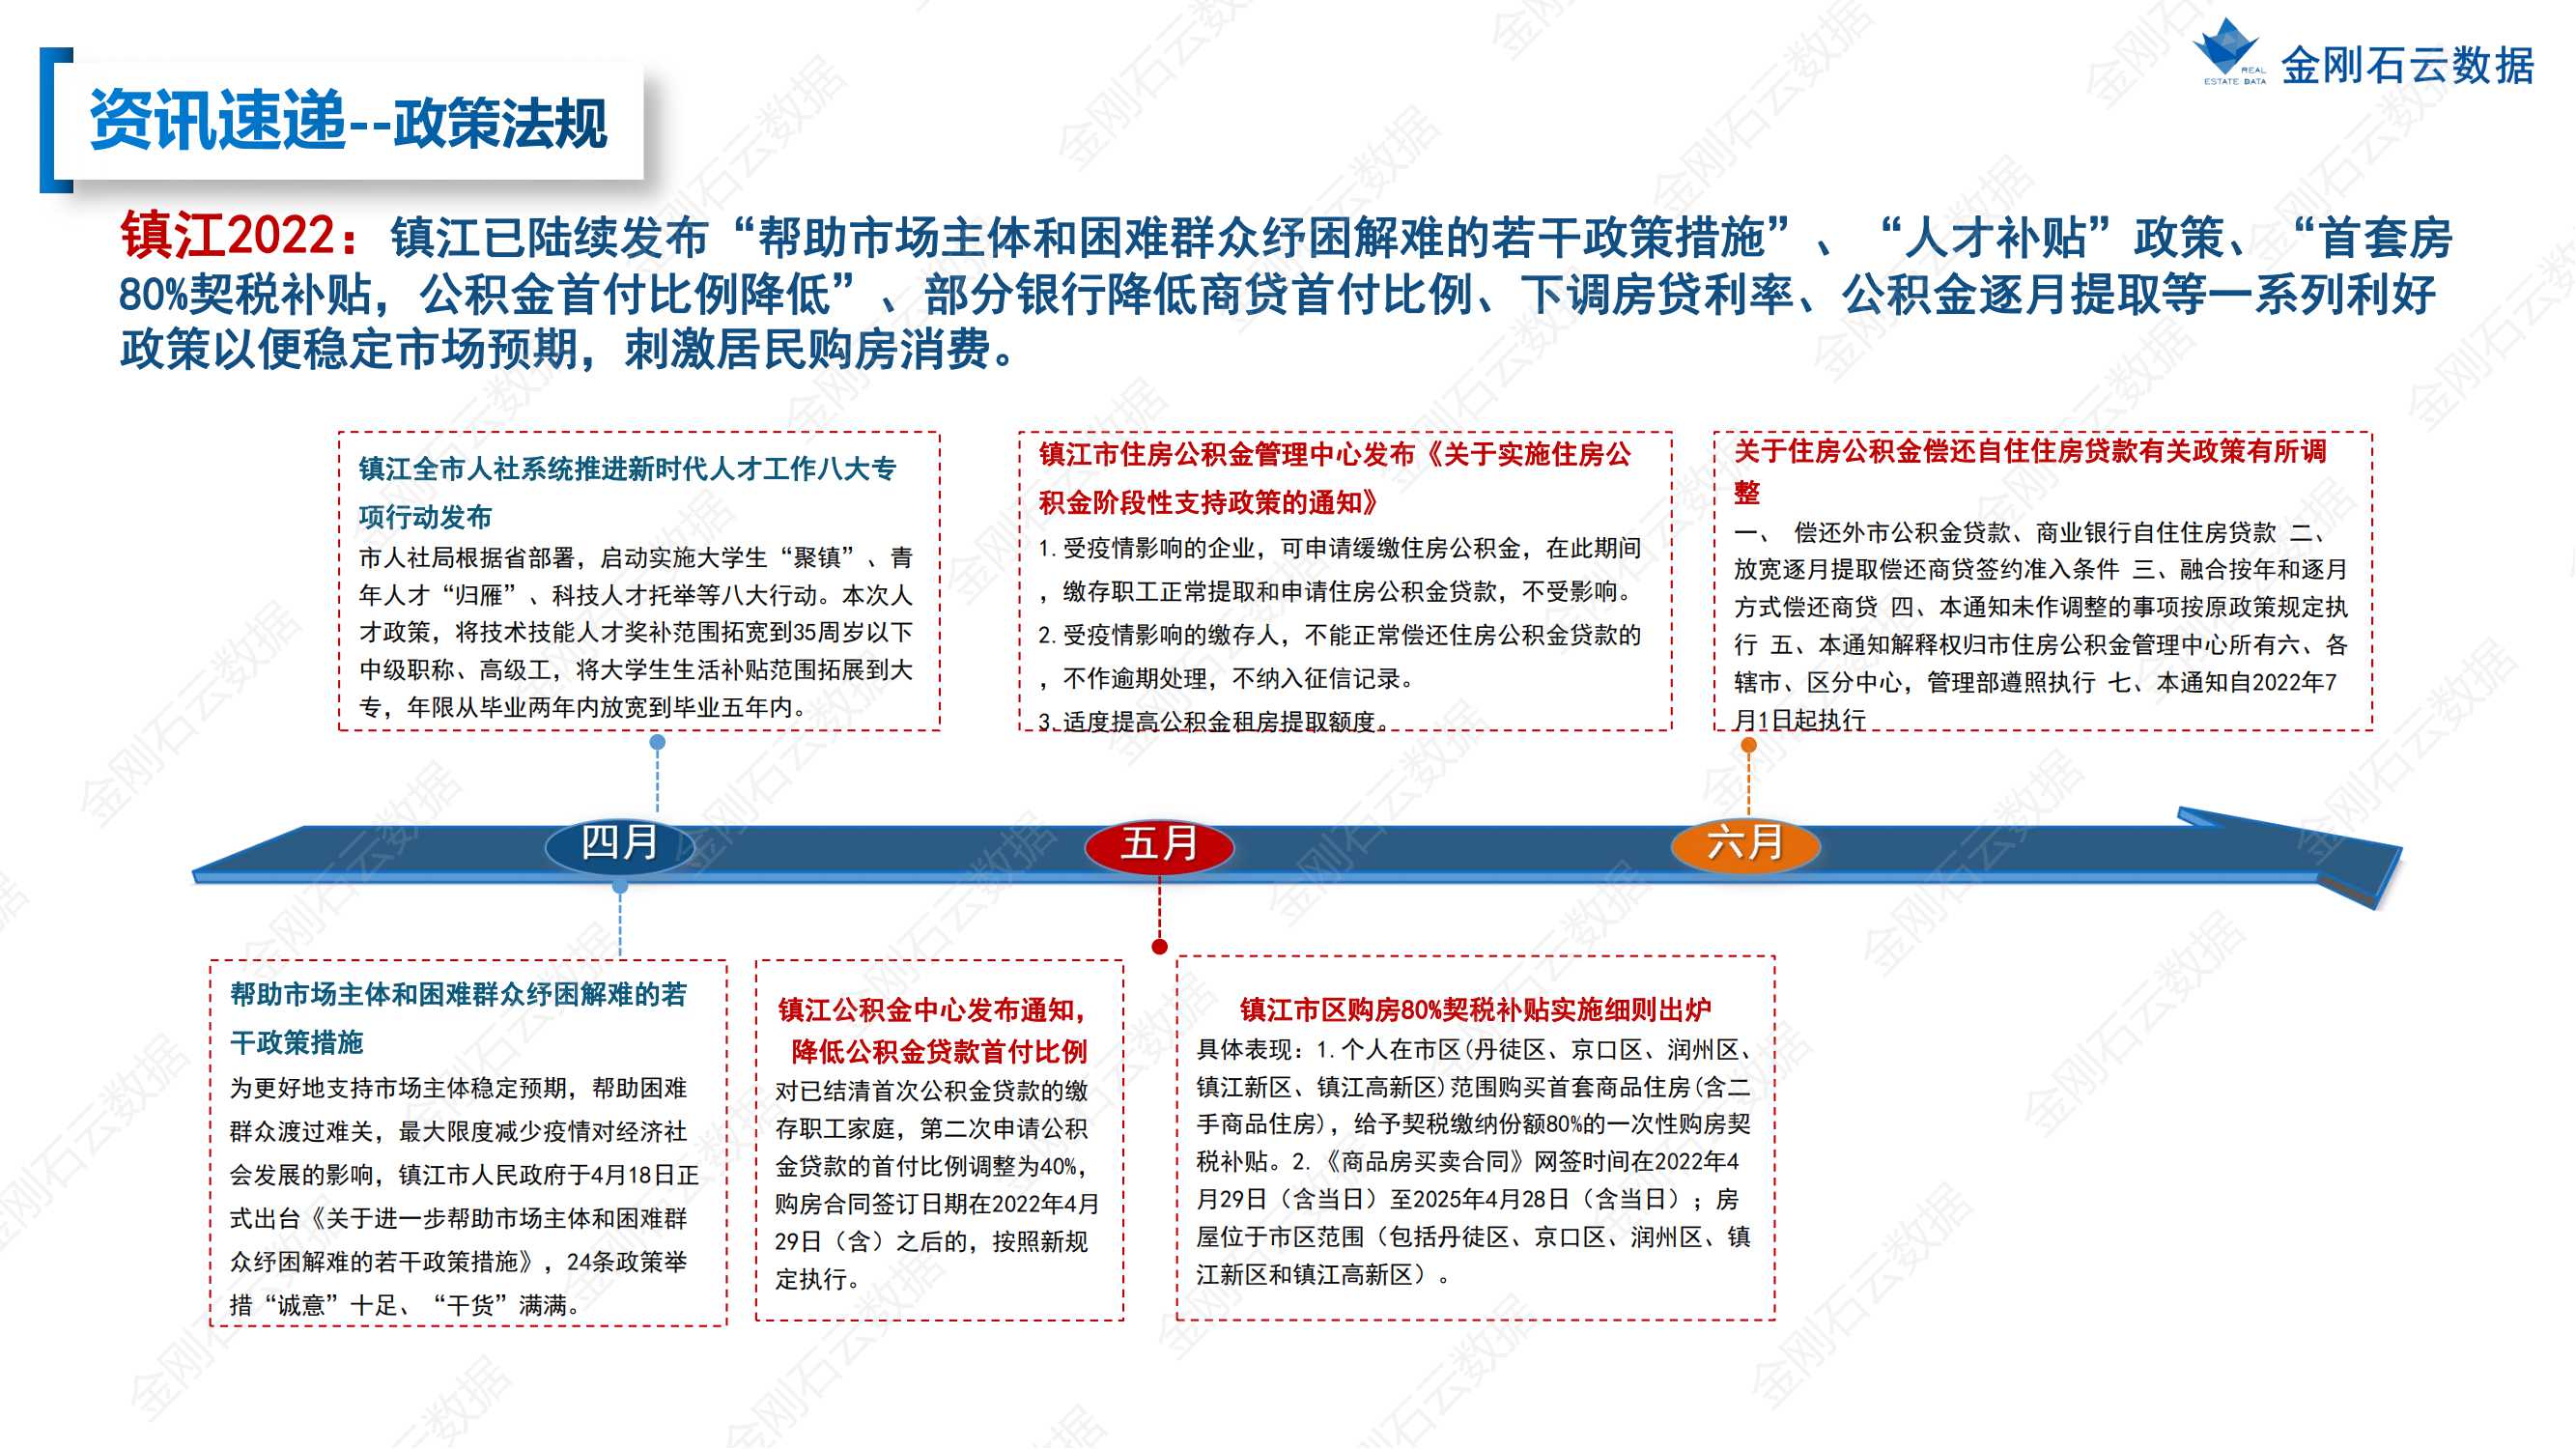 【江苏镇江】2022年上半年度市场报告(图5)